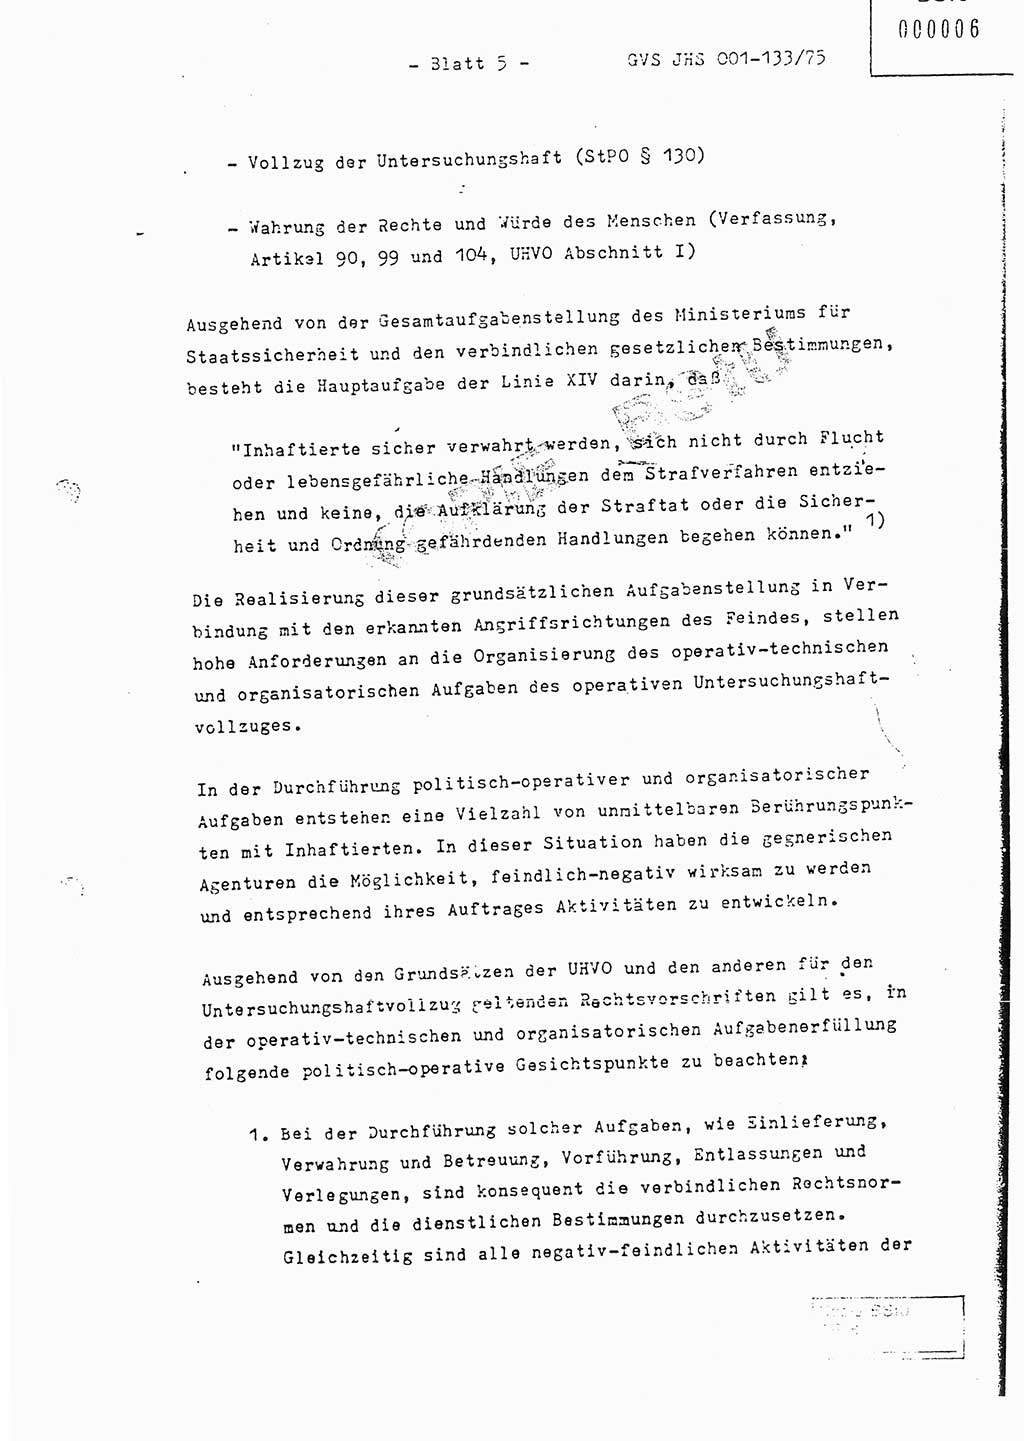 Fachschulabschlußarbeit Major Werner Braun (Abt. ⅩⅣ), Hauptmann Klaus Zeiß (Abt. ⅩⅣ), Ministerium für Staatssicherheit (MfS) [Deutsche Demokratische Republik (DDR)], Juristische Hochschule (JHS), Geheime Verschlußsache (GVS) 001-133/75, Potsdam 1976, Blatt 5 (FS-Abschl.-Arb. MfS DDR JHS GVS 001-133/75 1976, Bl. 5)